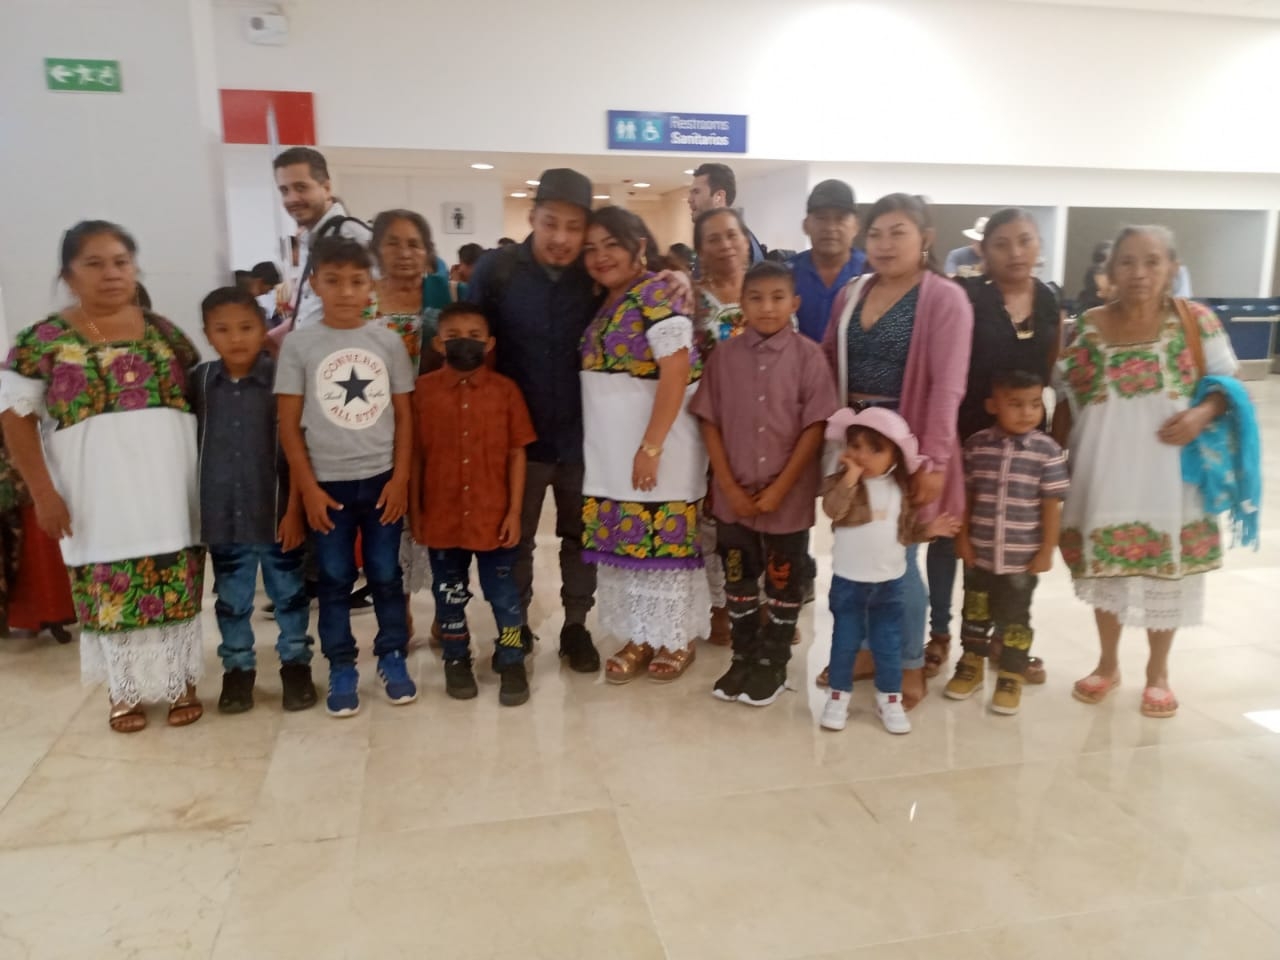 Aeropuerto de Mérida: Migrantes regresan de San Francisco después de 10 años